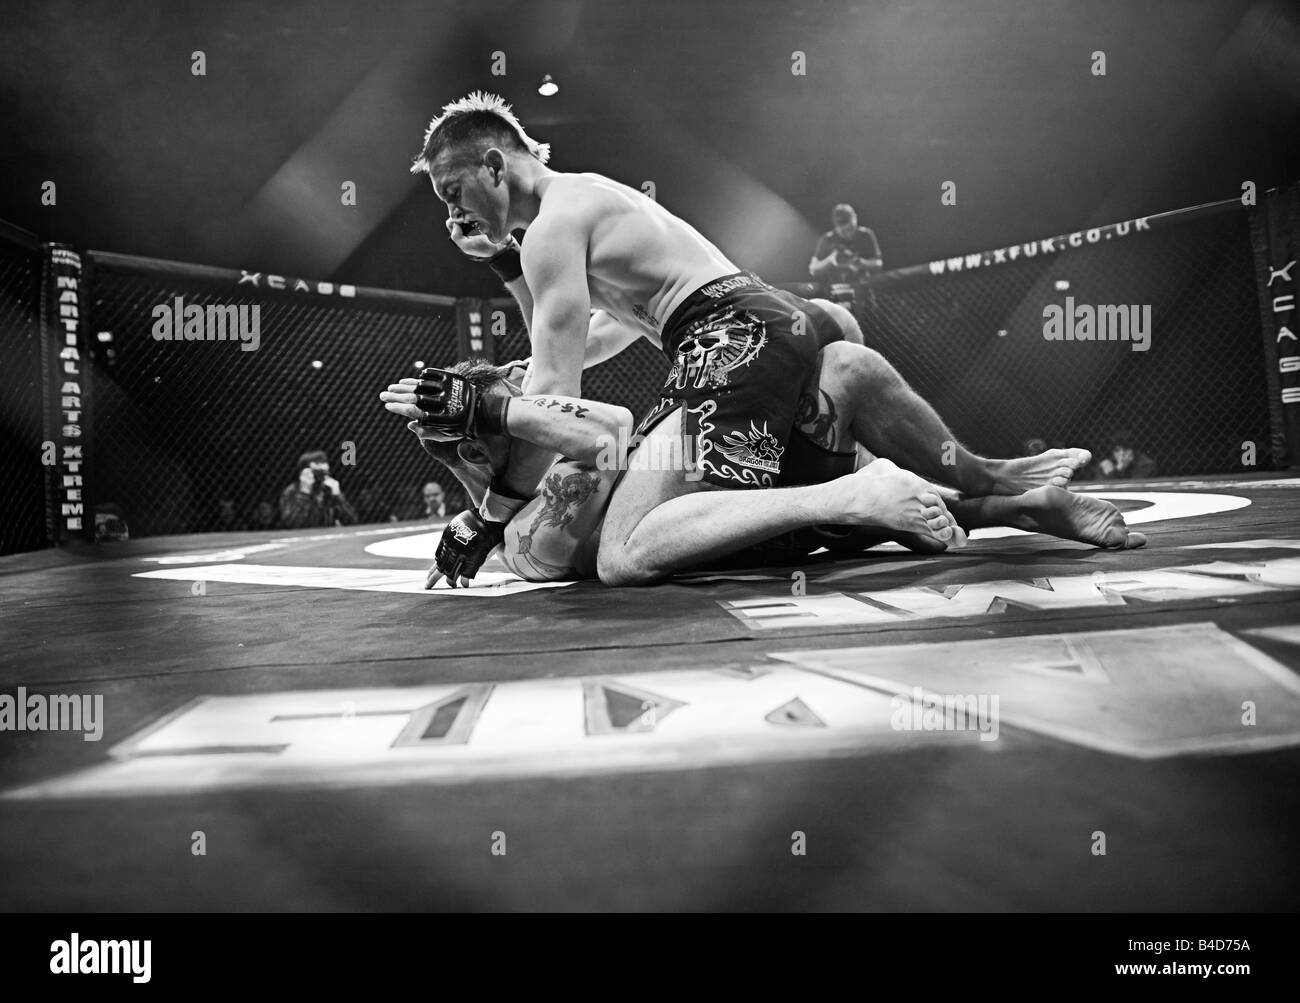 Käfig-Kämpfer in Aktion während eines Wettbewerbs Käfig Kriege in Brahead Arena in Glasgow MMA Kämpfer Mixed Martial Arts Kämpfer Stockfoto